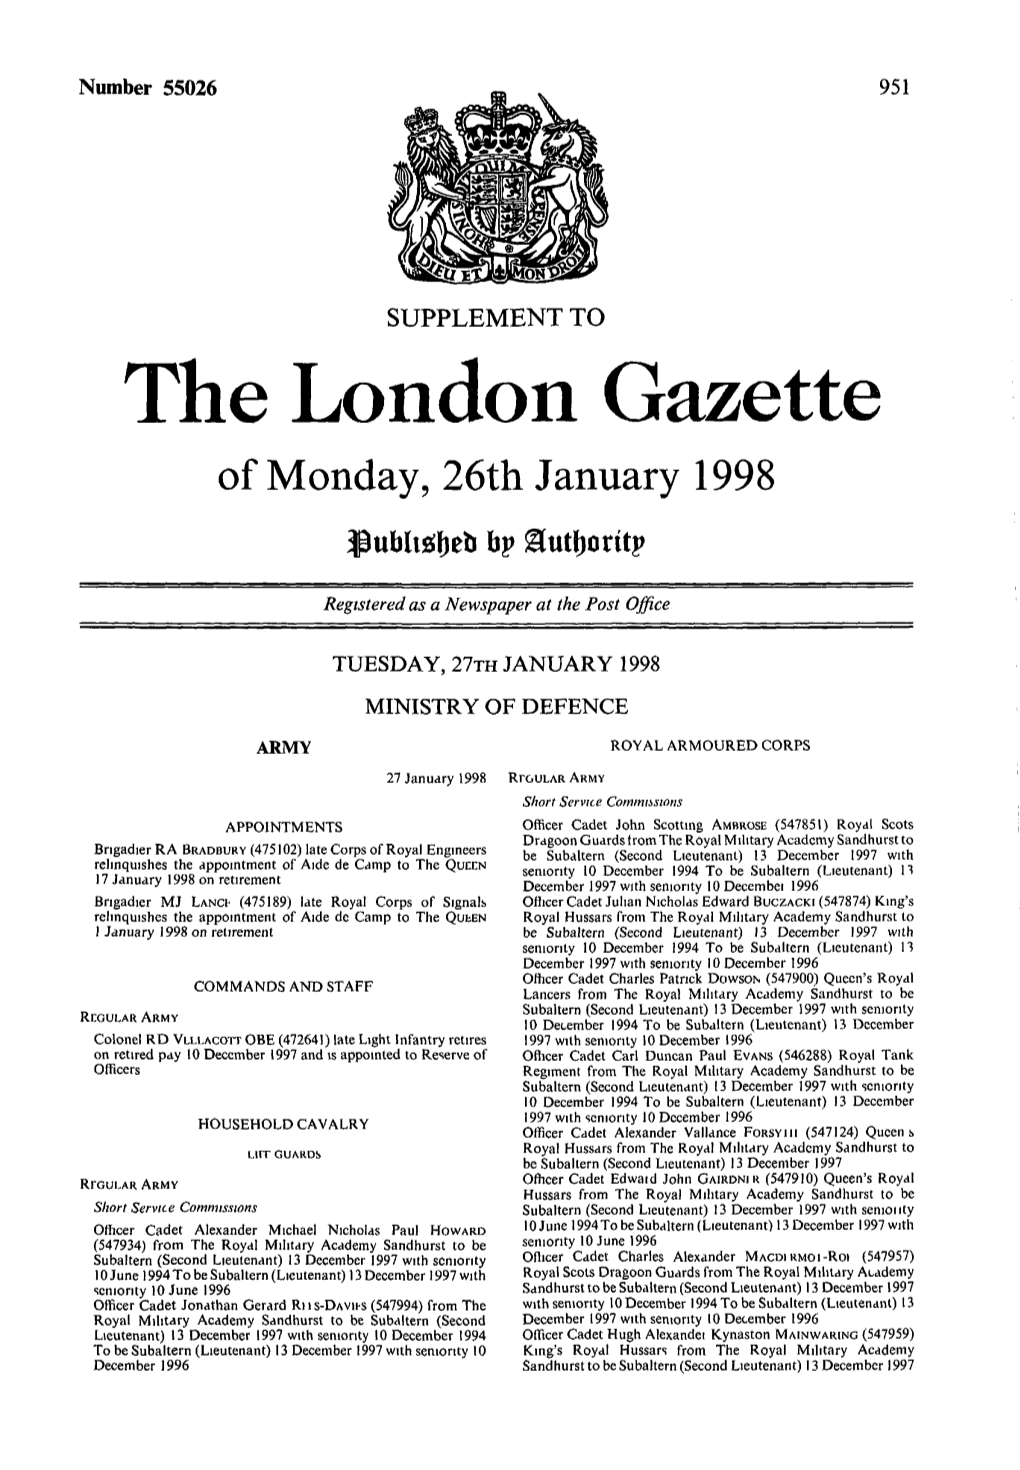 The London Gazette of Monday, 26Th January 1998 Bp Hutljorttp